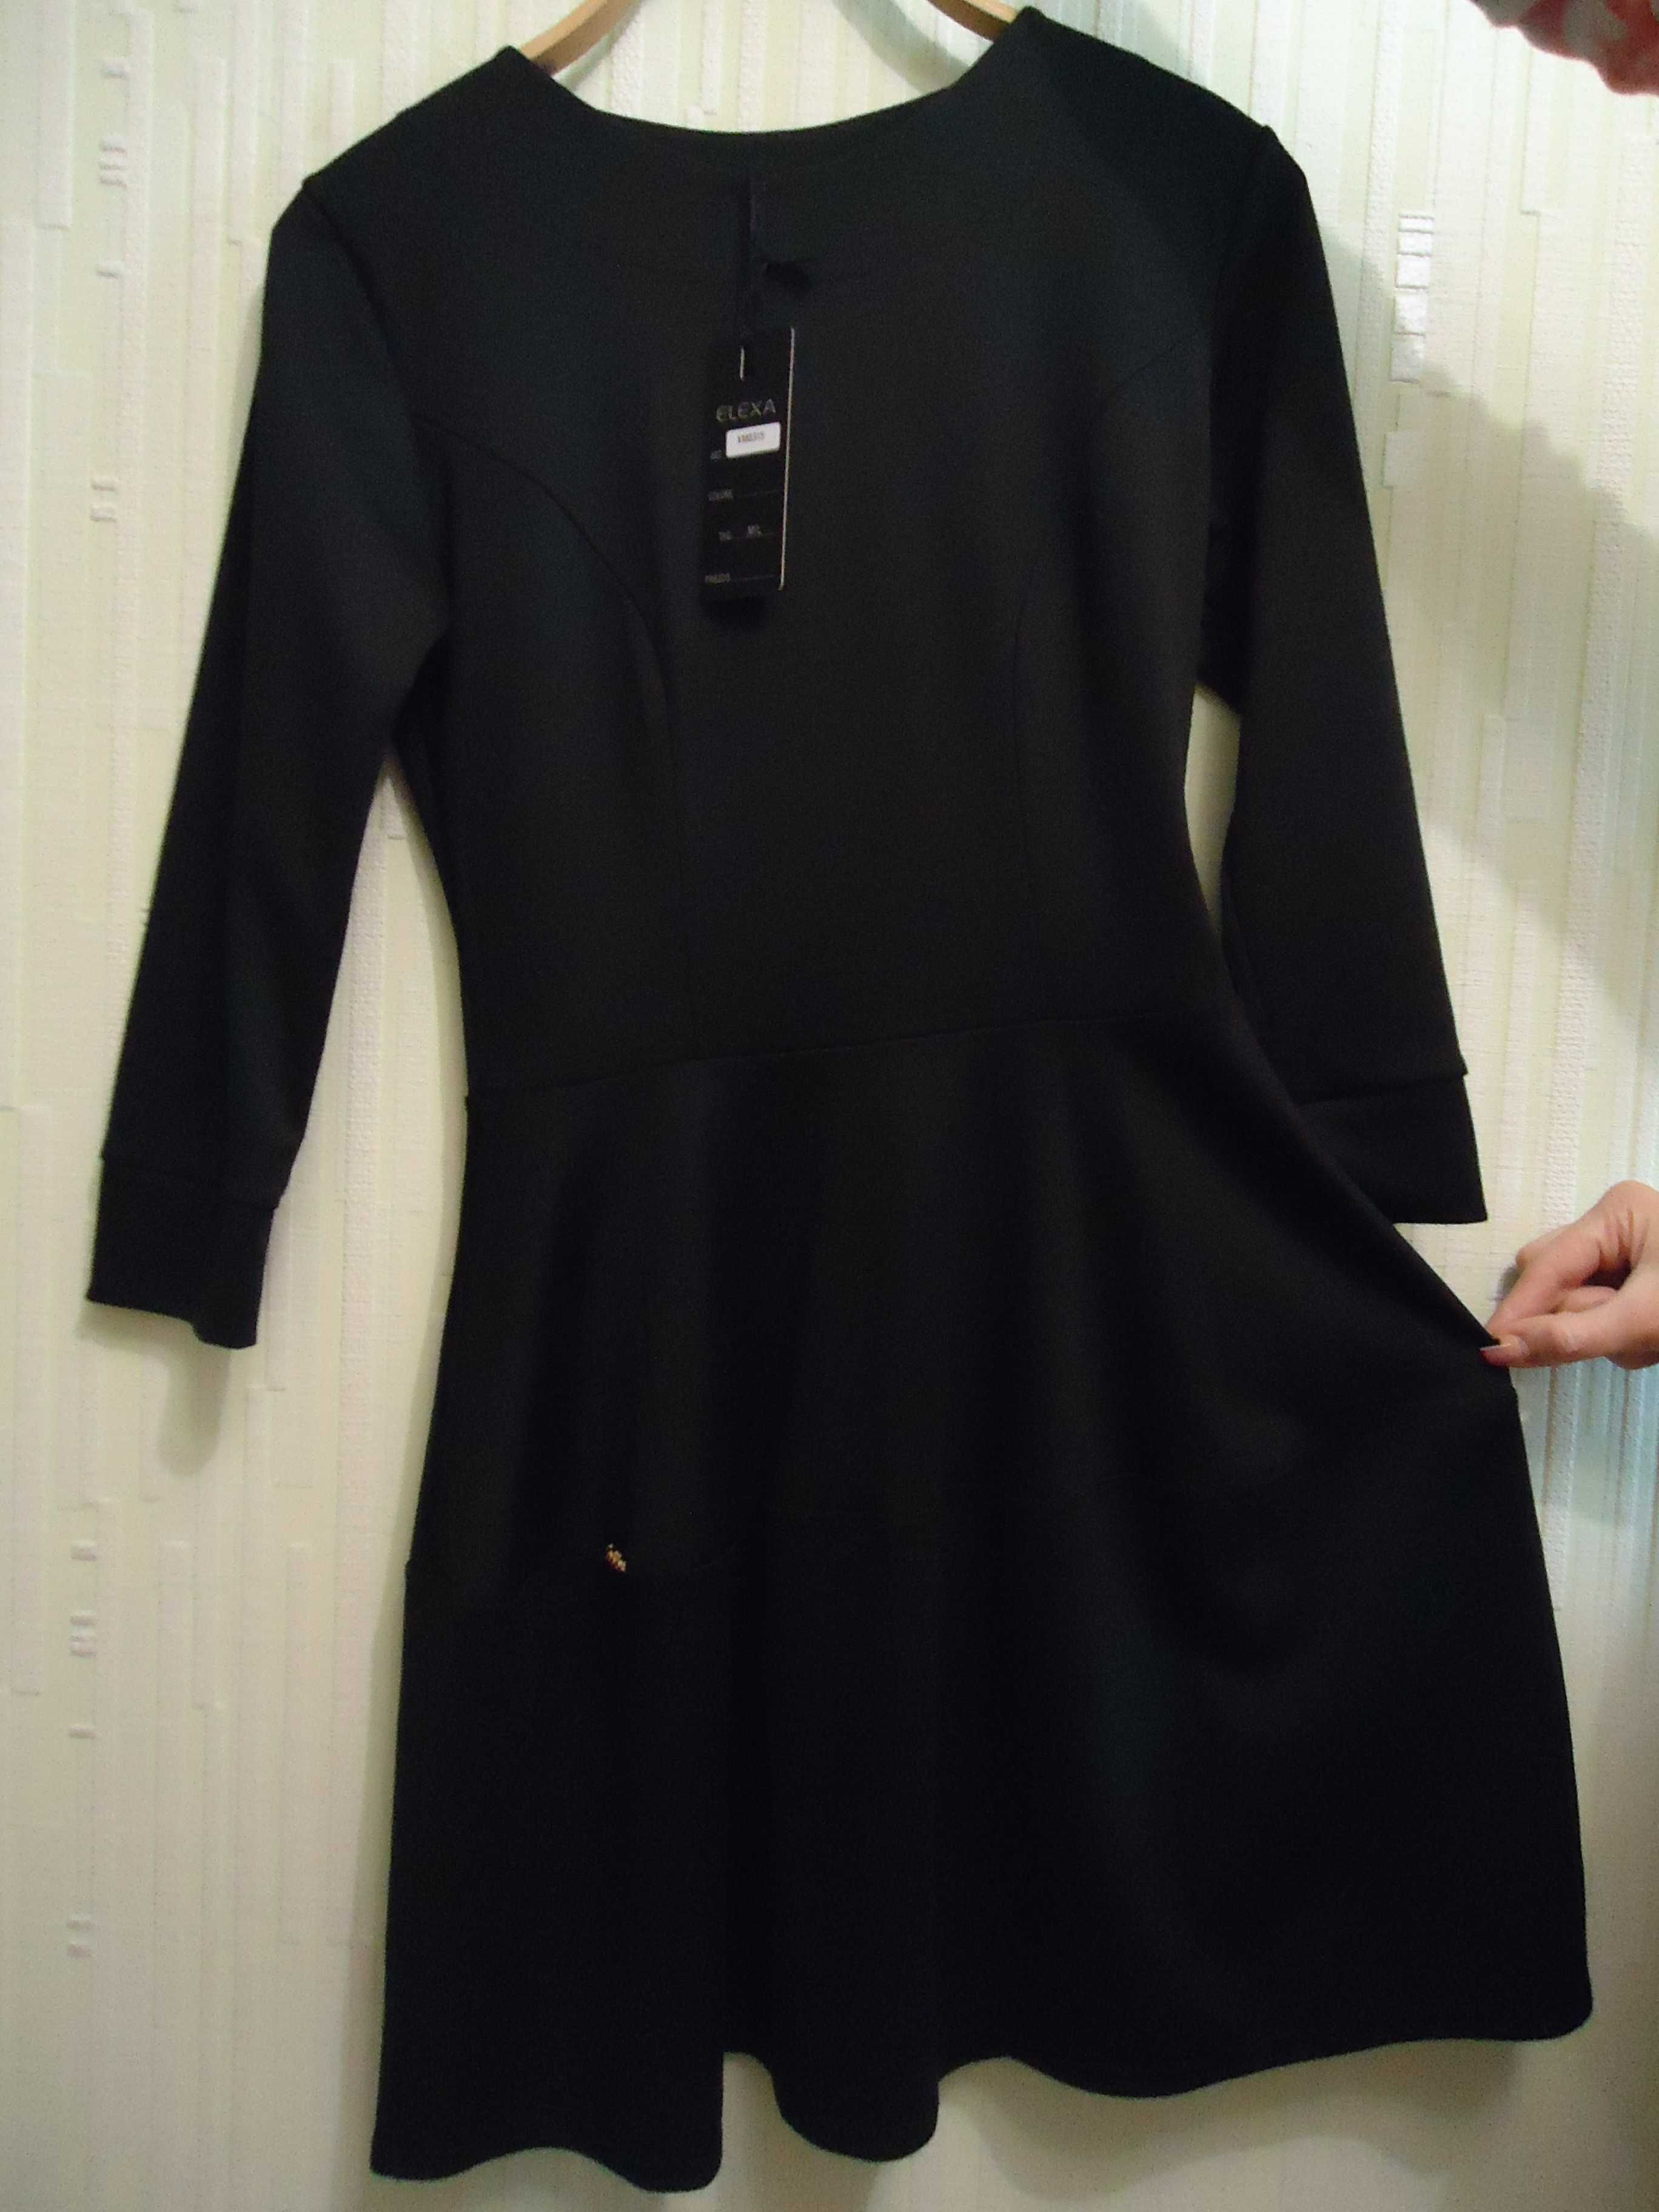 Новое фирменное красивое женское платье, размер 44, дёшево.